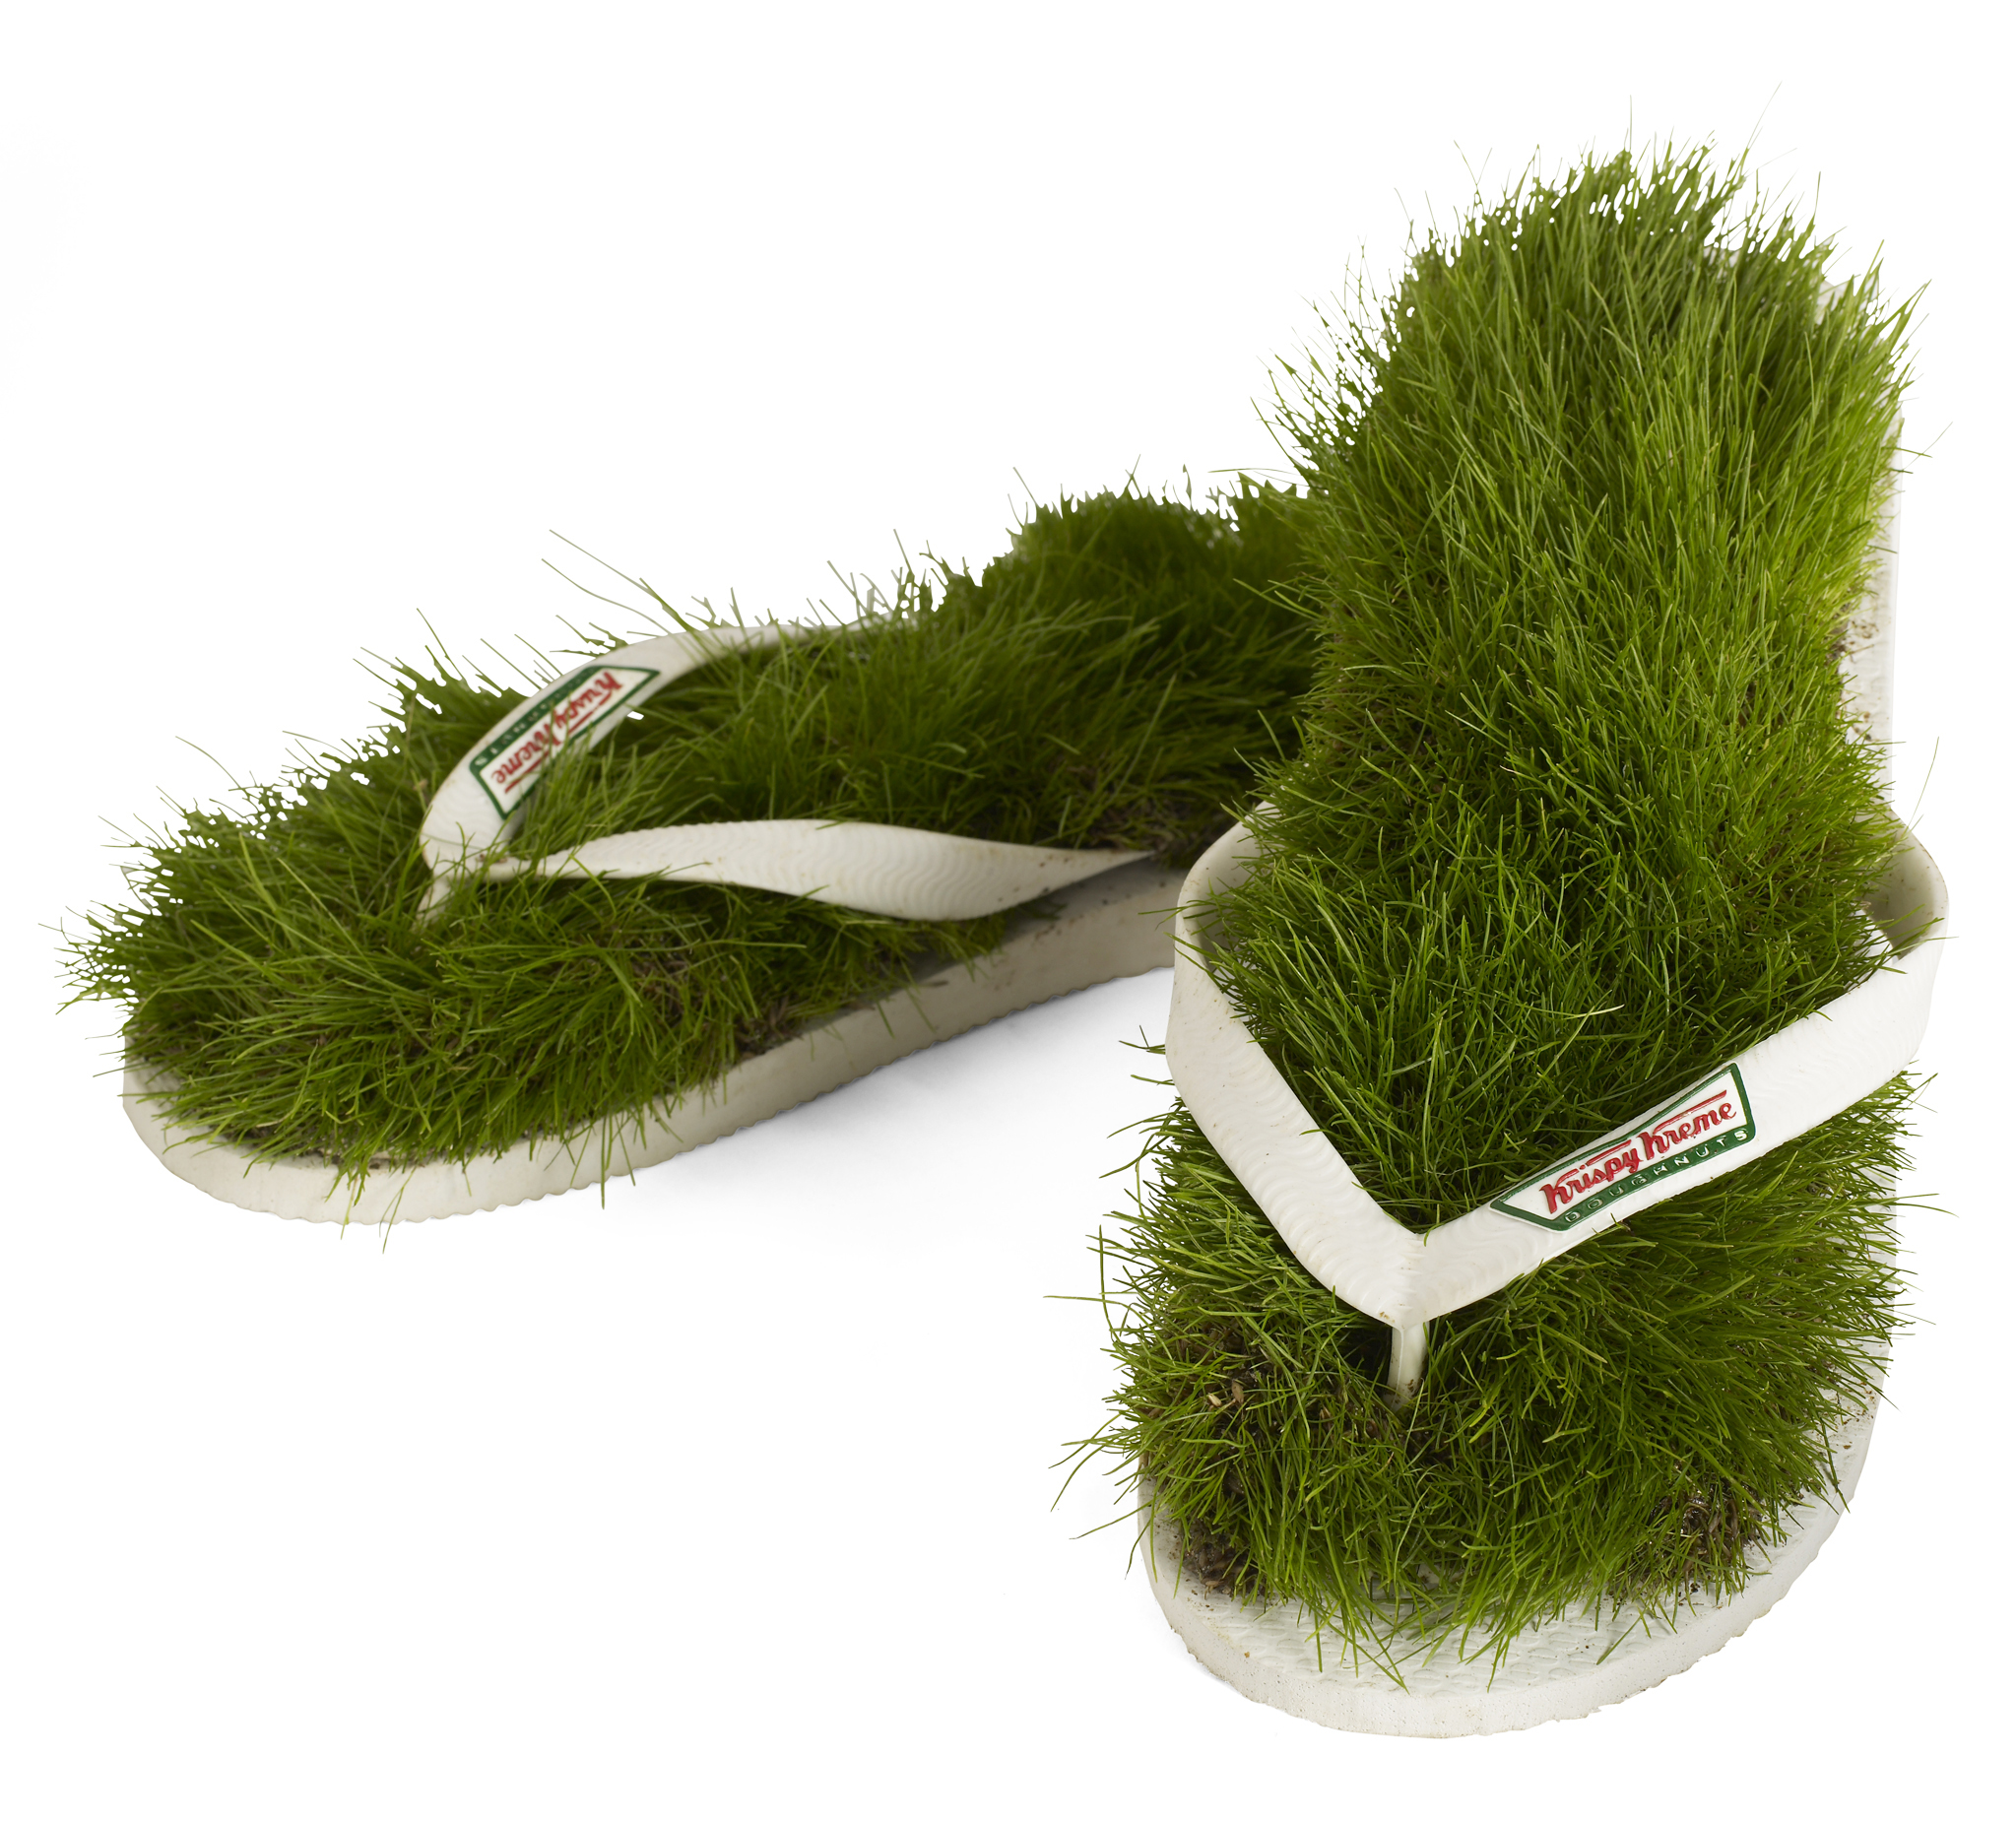 grass flops